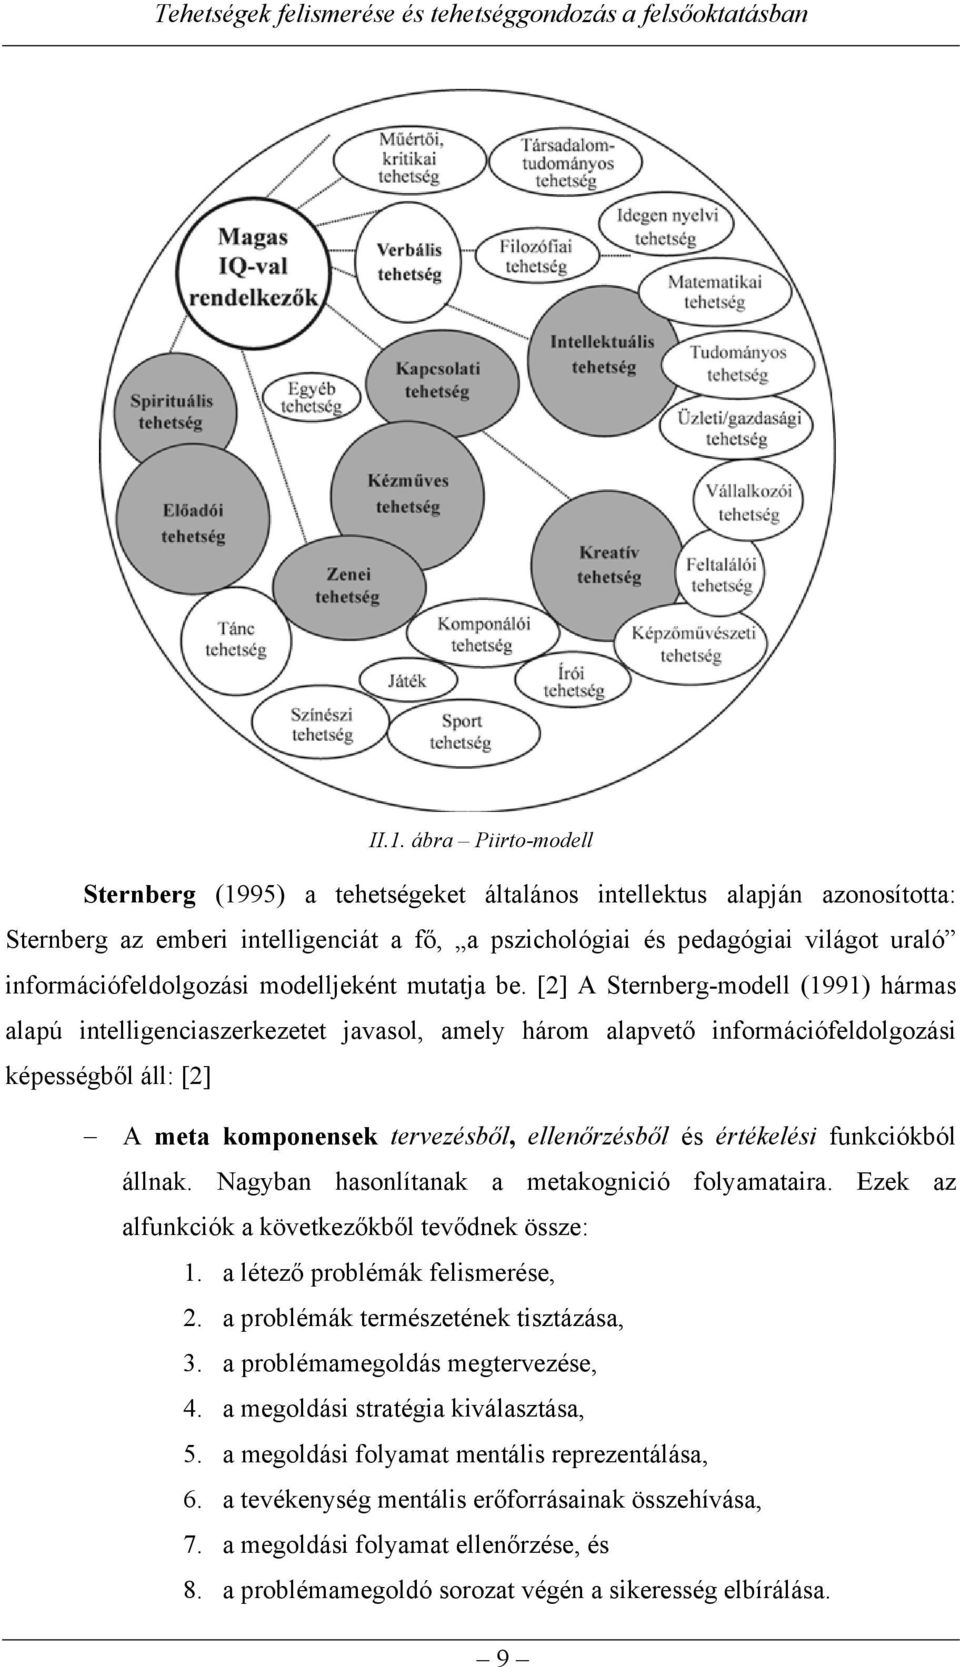 [2] A Sternberg-modell (1991) hármas alapú intelligenciaszerkezetet javasol, amely három alapvető információfeldolgozási képességből áll: [2] A meta komponensek tervezésből, ellenőrzésből és